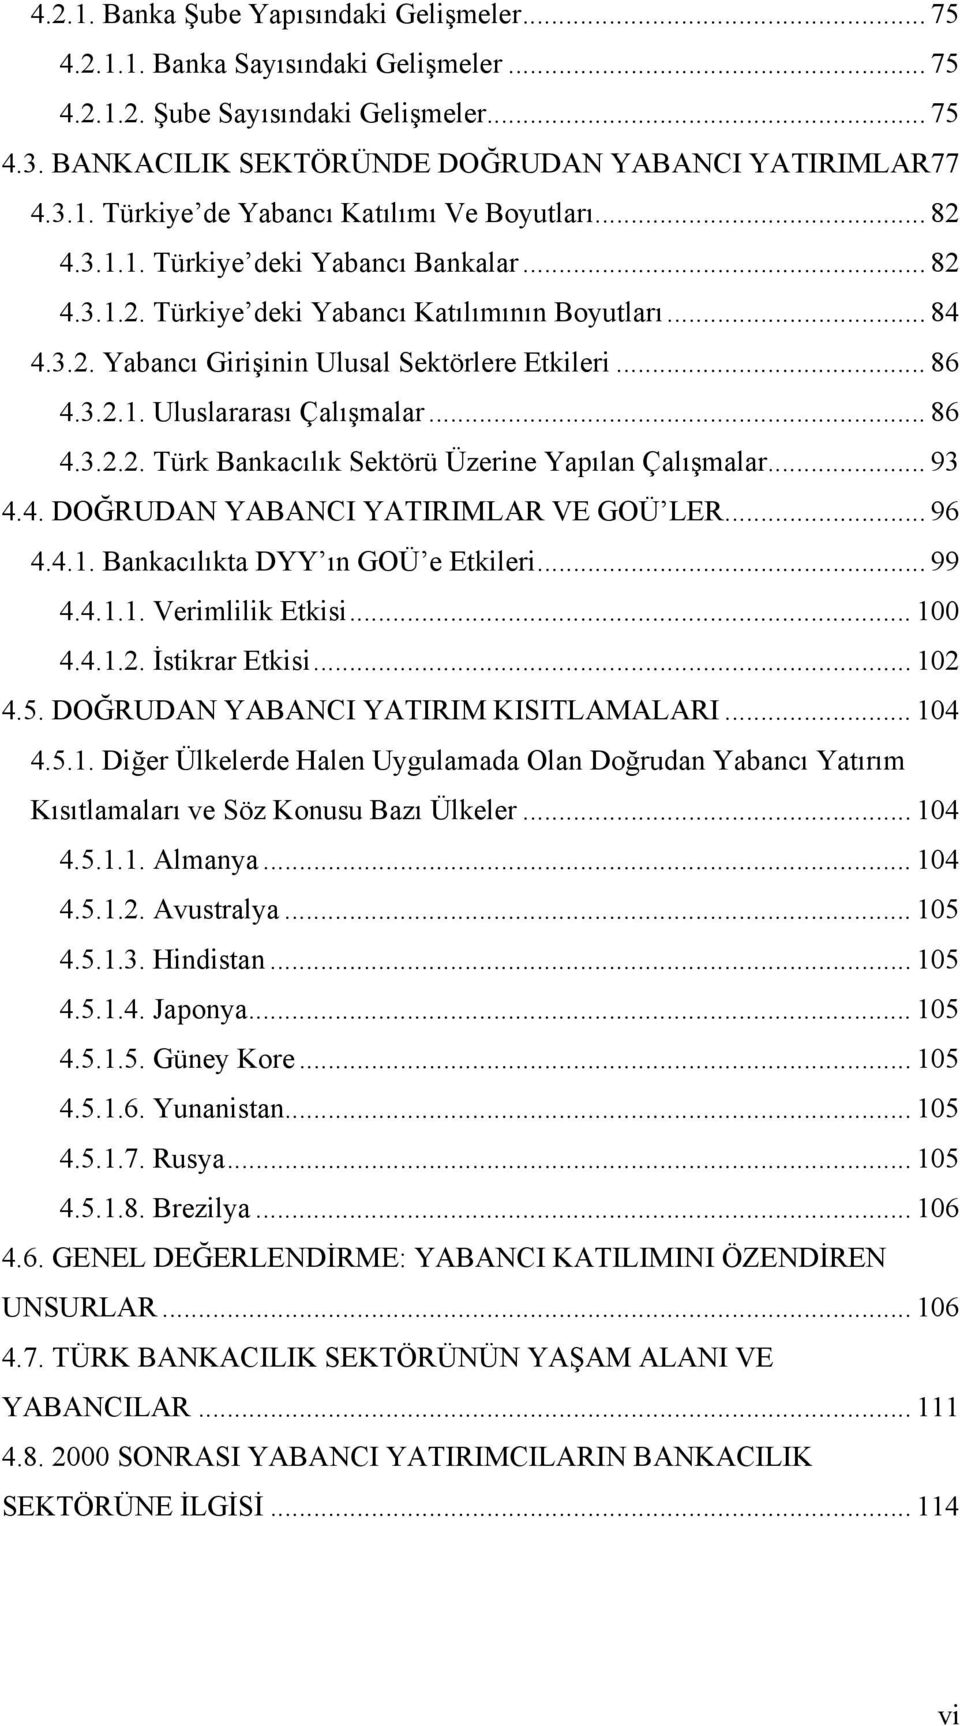 .. 86 4.3.2.2. Türk Bankacılık Sektörü Üzerine Yapılan Çalışmalar... 93 4.4. DOĞRUDAN YABANCI YATIRIMLAR VE GOÜ LER... 96 4.4.1. Bankacılıkta DYY ın GOÜ e Etkileri... 99 4.4.1.1. Verimlilik Etkisi.